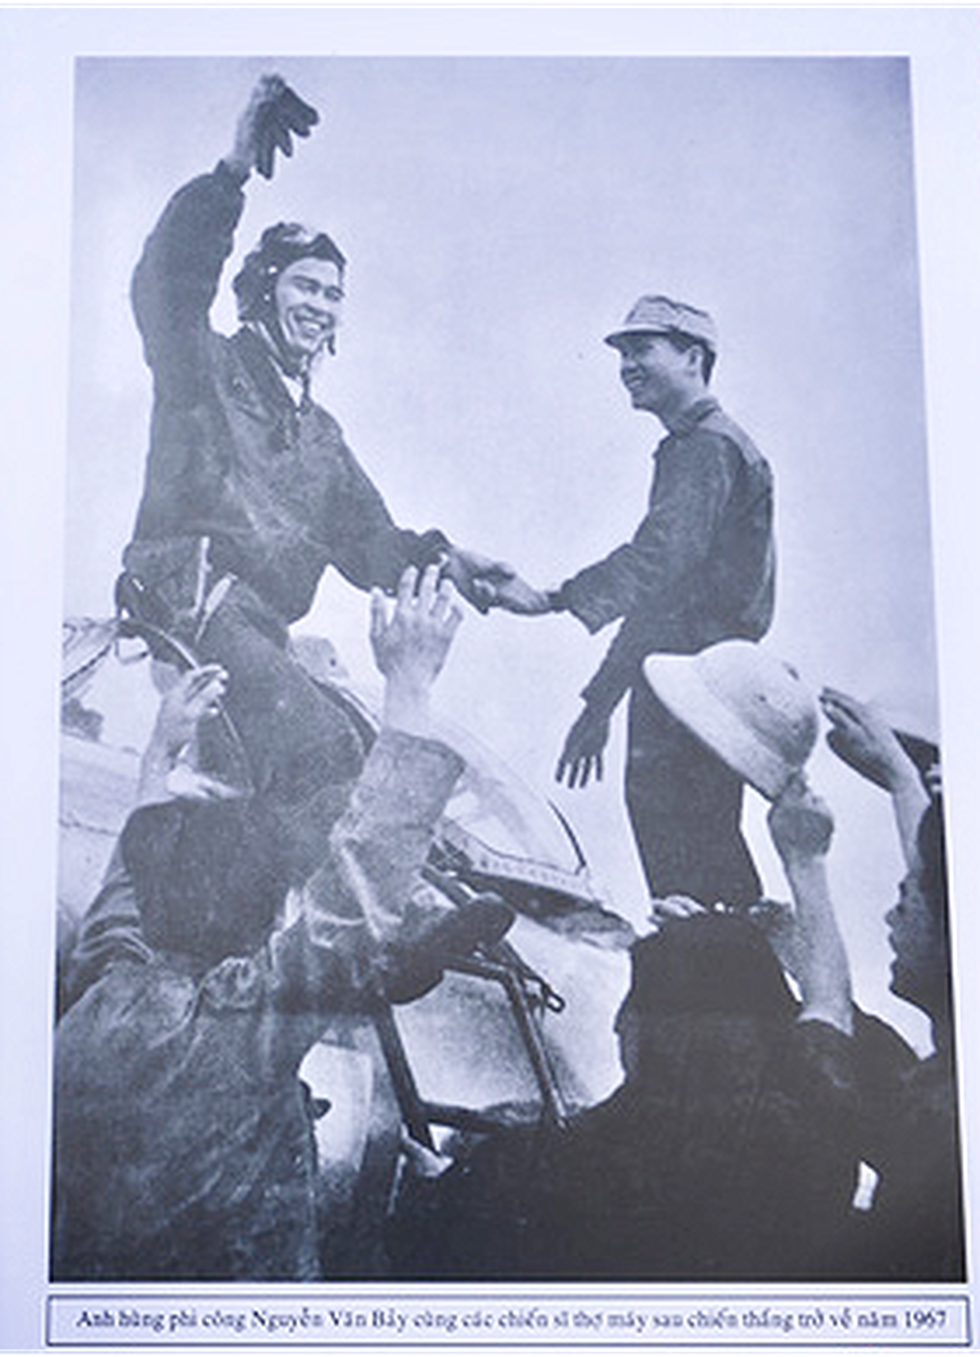 Anh hùng phi công Nguyễn Văn Bảy cùng các chiến sĩ thợ máy giây phút sau chiến thắng trở về, năm 1967 - Ảnh: TỰ TRUNG chụp lại